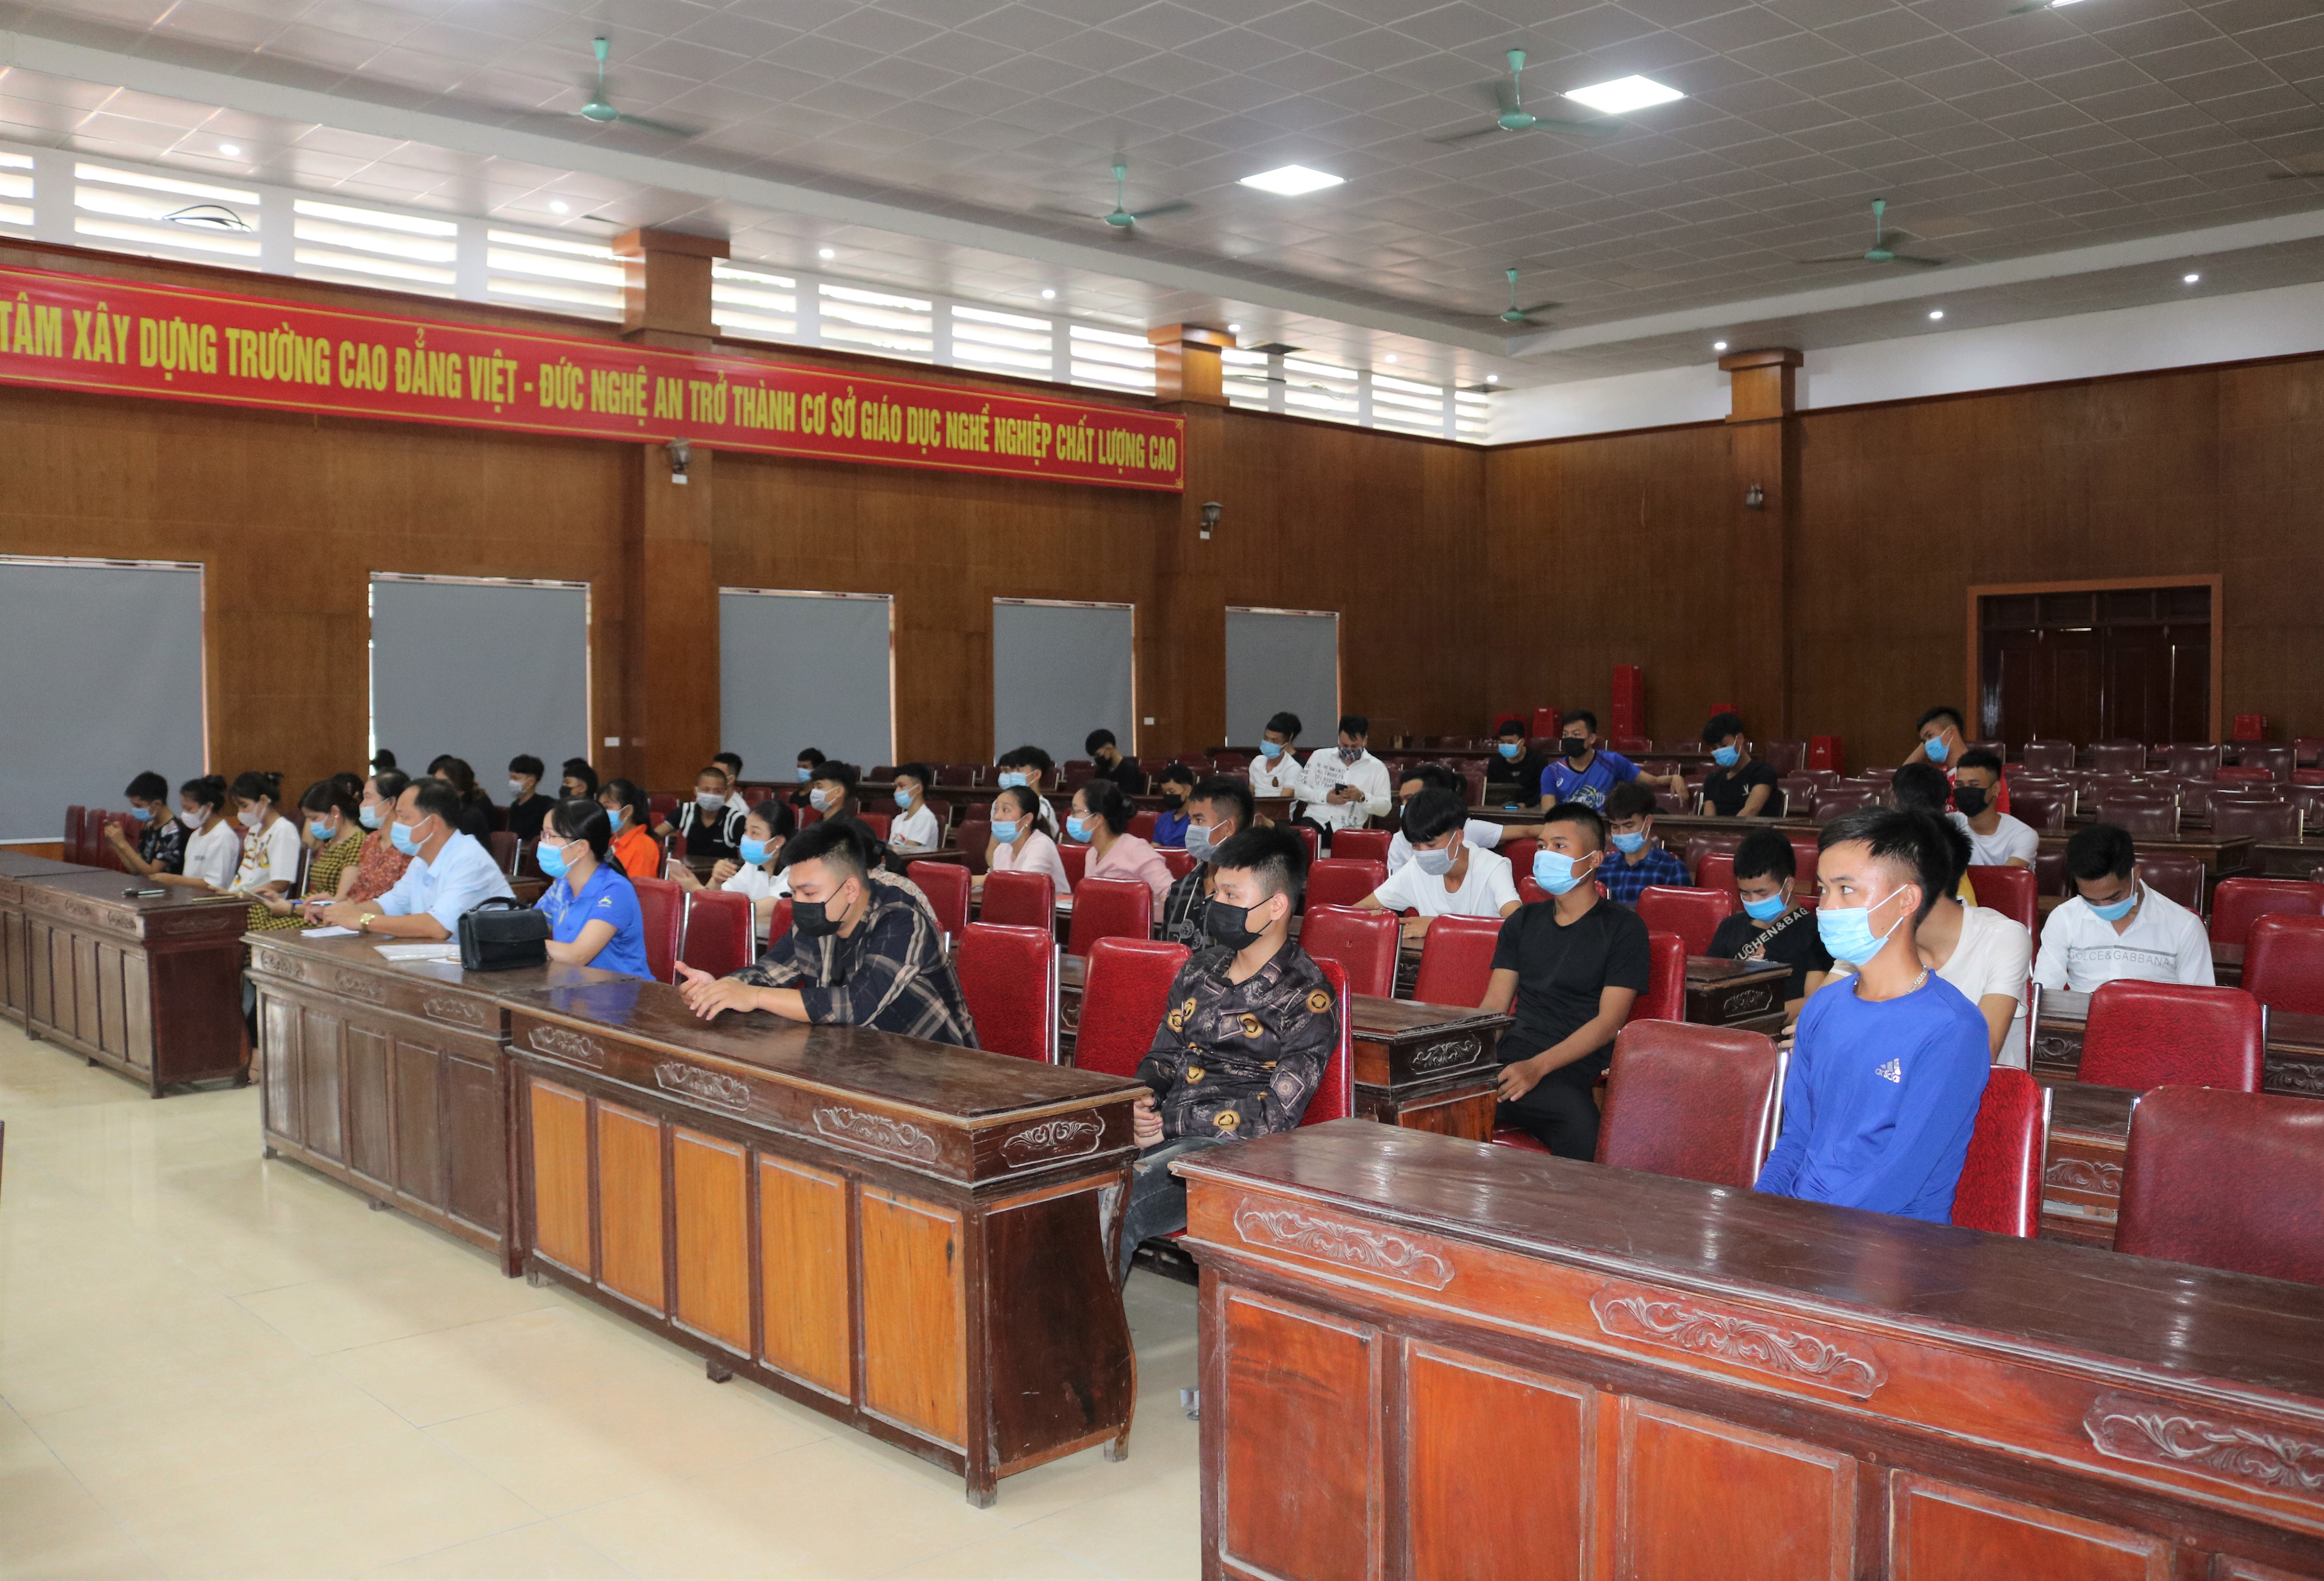 Trường Cao đẳng Việt – Đức Nghệ An chi trả chính sách nội trú đợt 1 cho sinh viên Cao đẳng Khóa 12 và học sinh Trung cấp Khóa 13